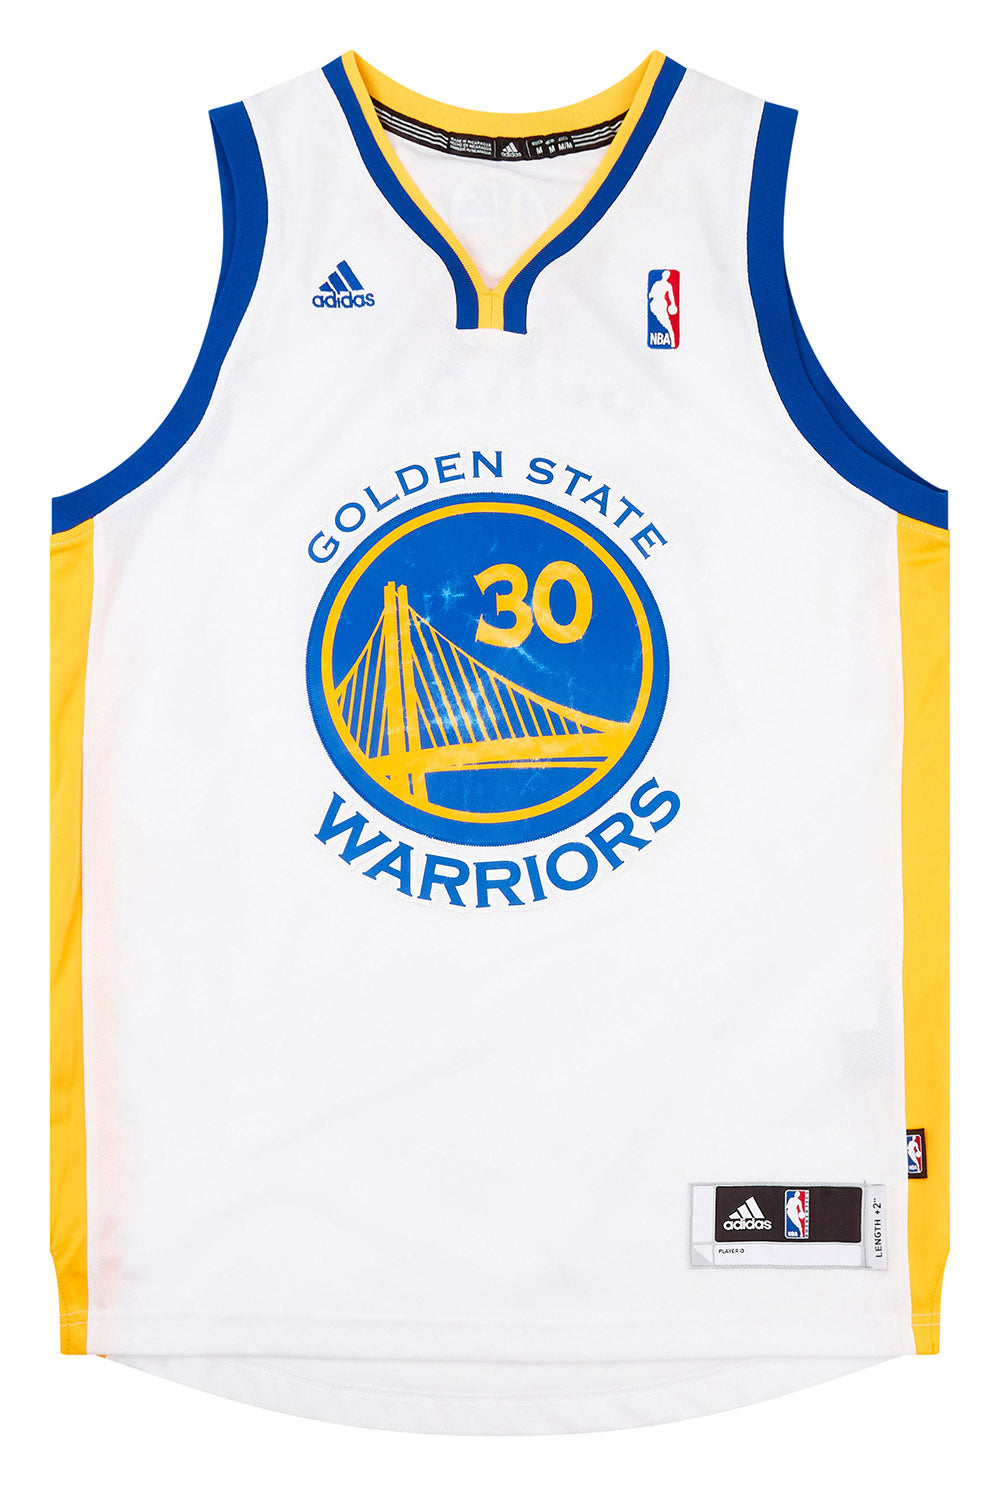 NEW Adidas Steph Curry Golden State Warriors #30 Swingman NBA Jersey MENS  XXL+2